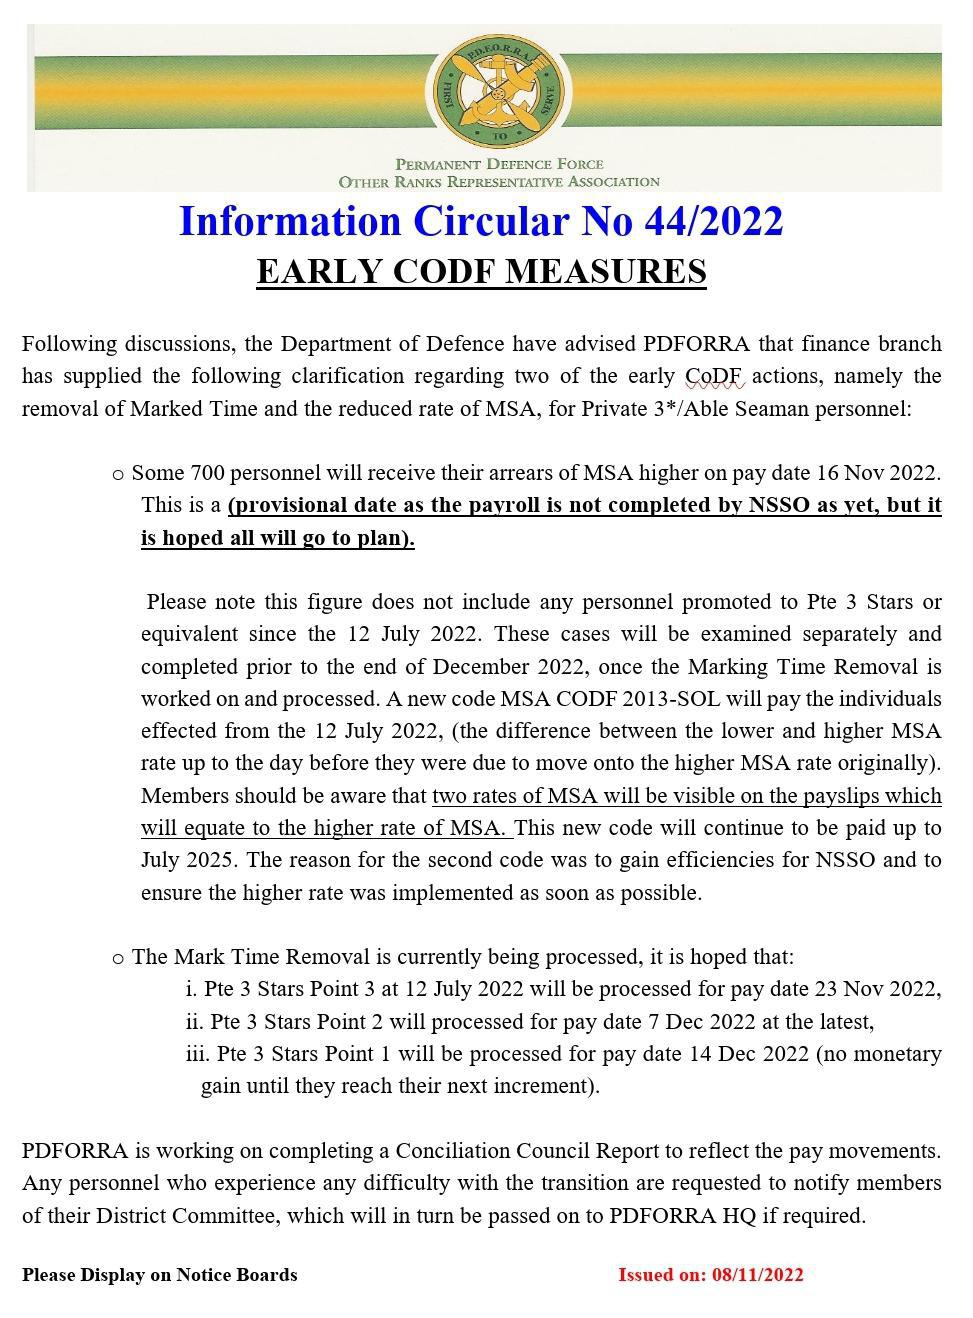 Information Circular No 44 of 22 - Early CODF Measures